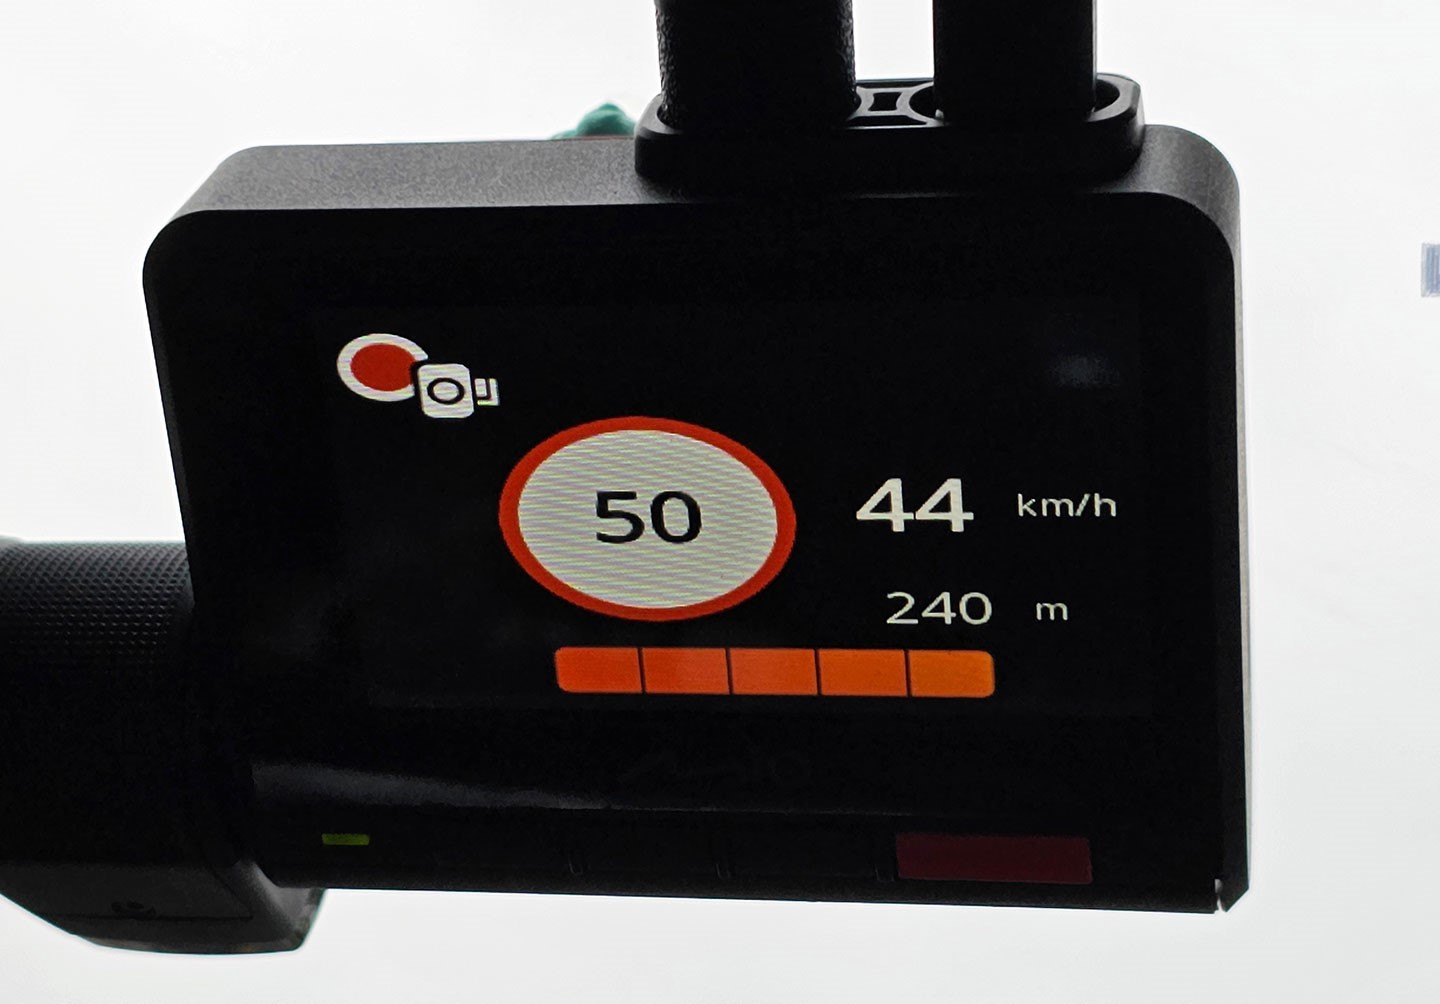 在車輛行進過程，前方若有測速照相執法，除了會有示音與語音提示外，主機螢幕也會顯示速限、當下速度與距離提示。